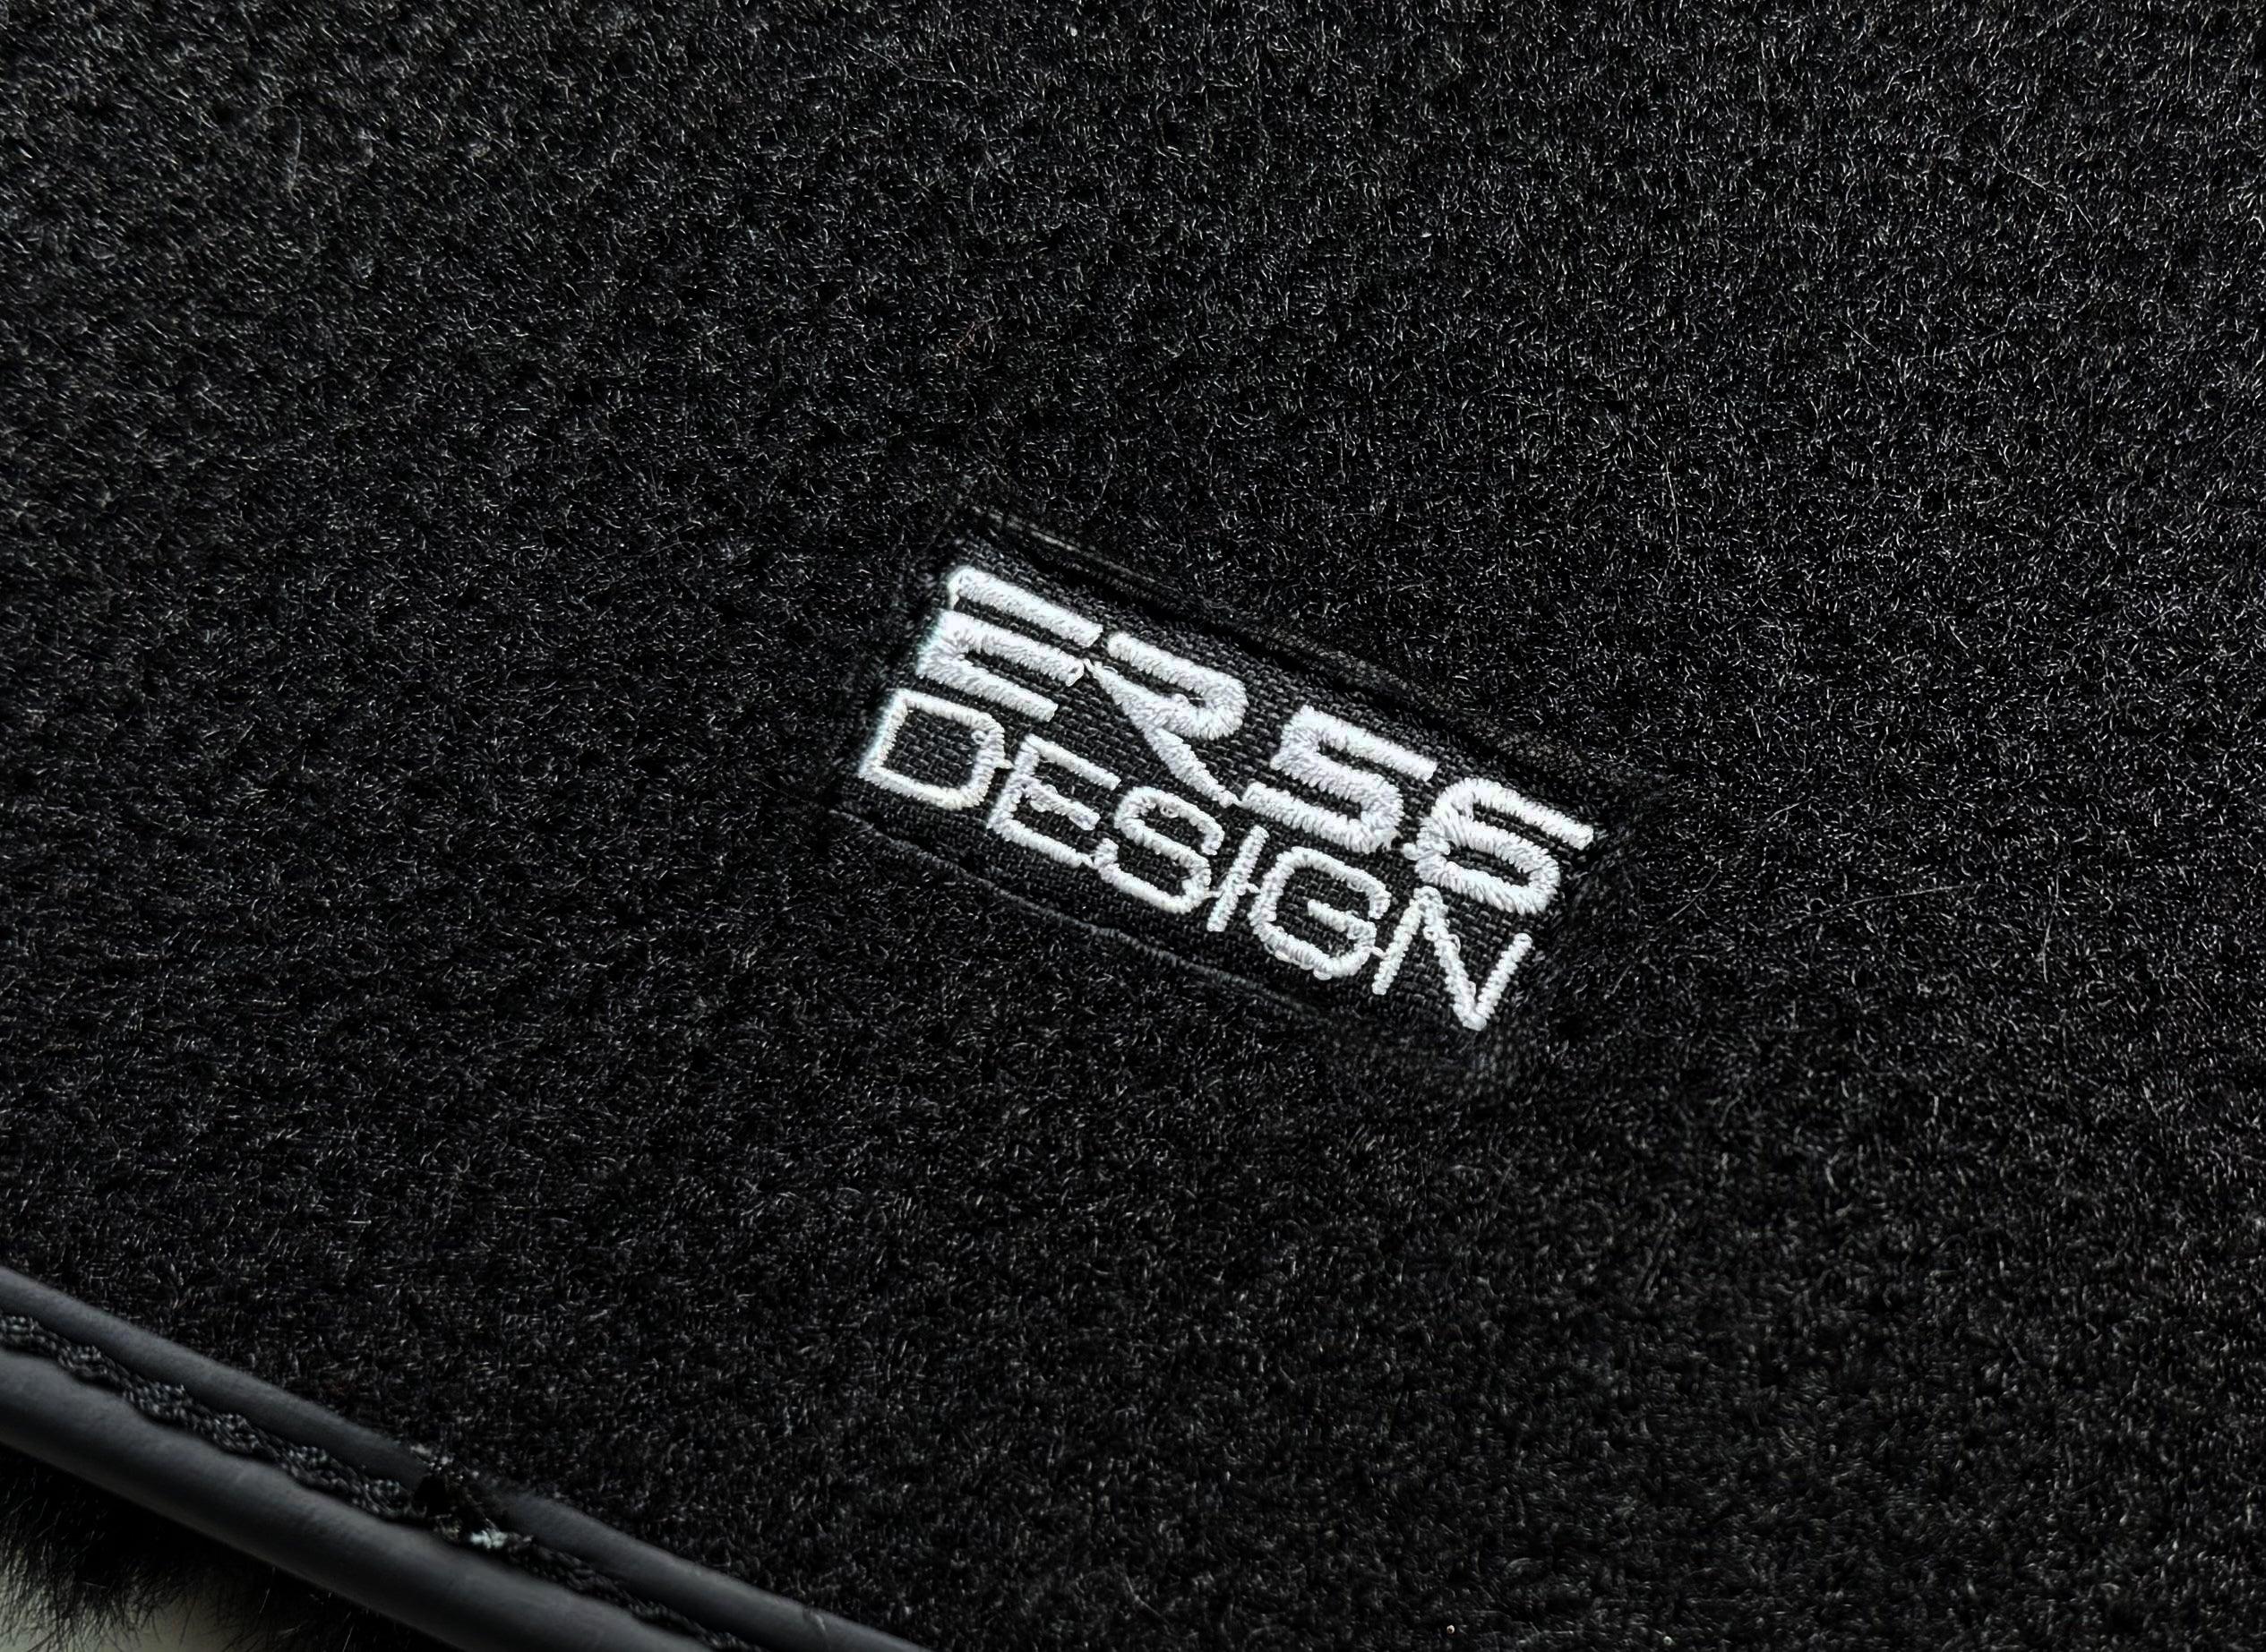 Black Sheepskin Floor Floor Mats For BMW X5 Series E53 ER56 Design